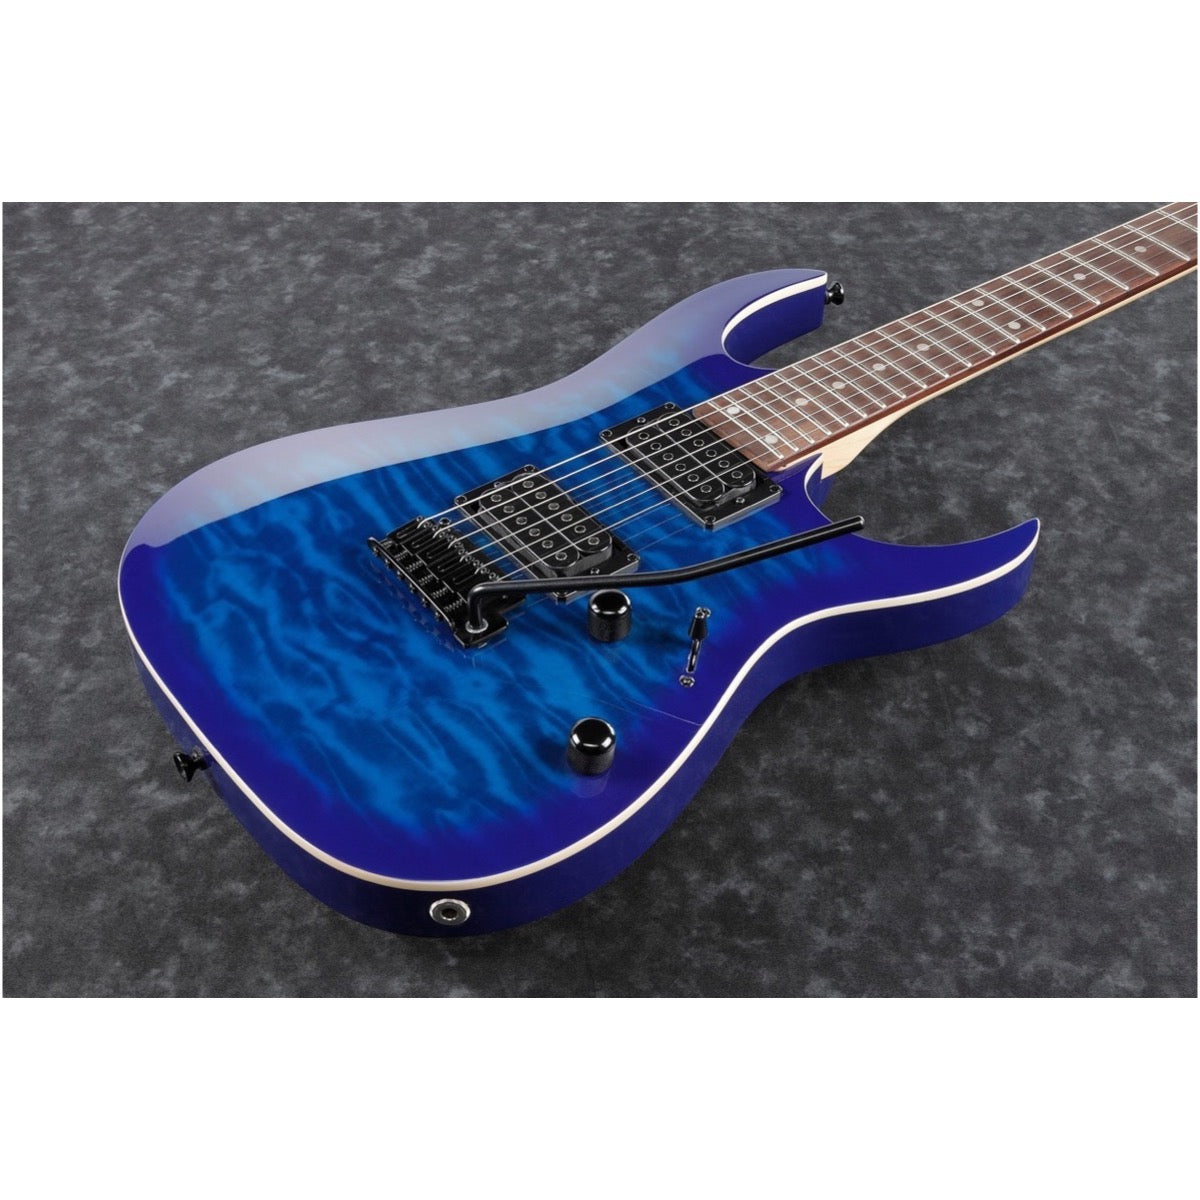 Ibanez GRGA120QA Gio Electric Guitar, Transparent Blue Burst